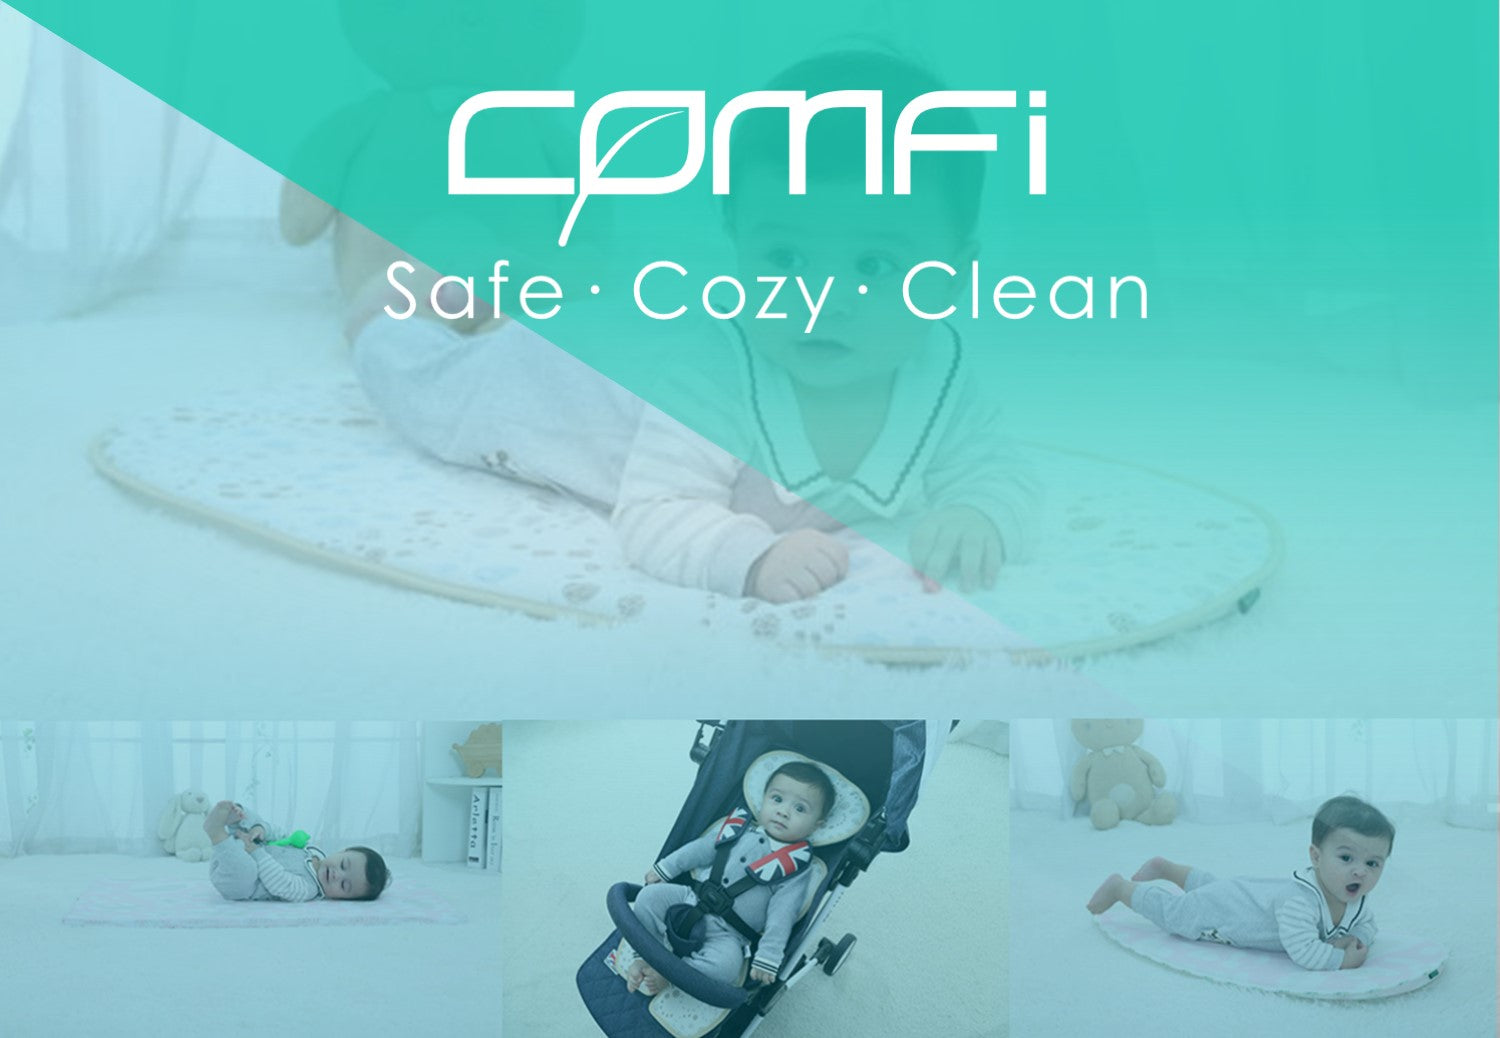 COMFi CNP01 - 3D X-90º Newborn Breathing Pillow (0-6 months)